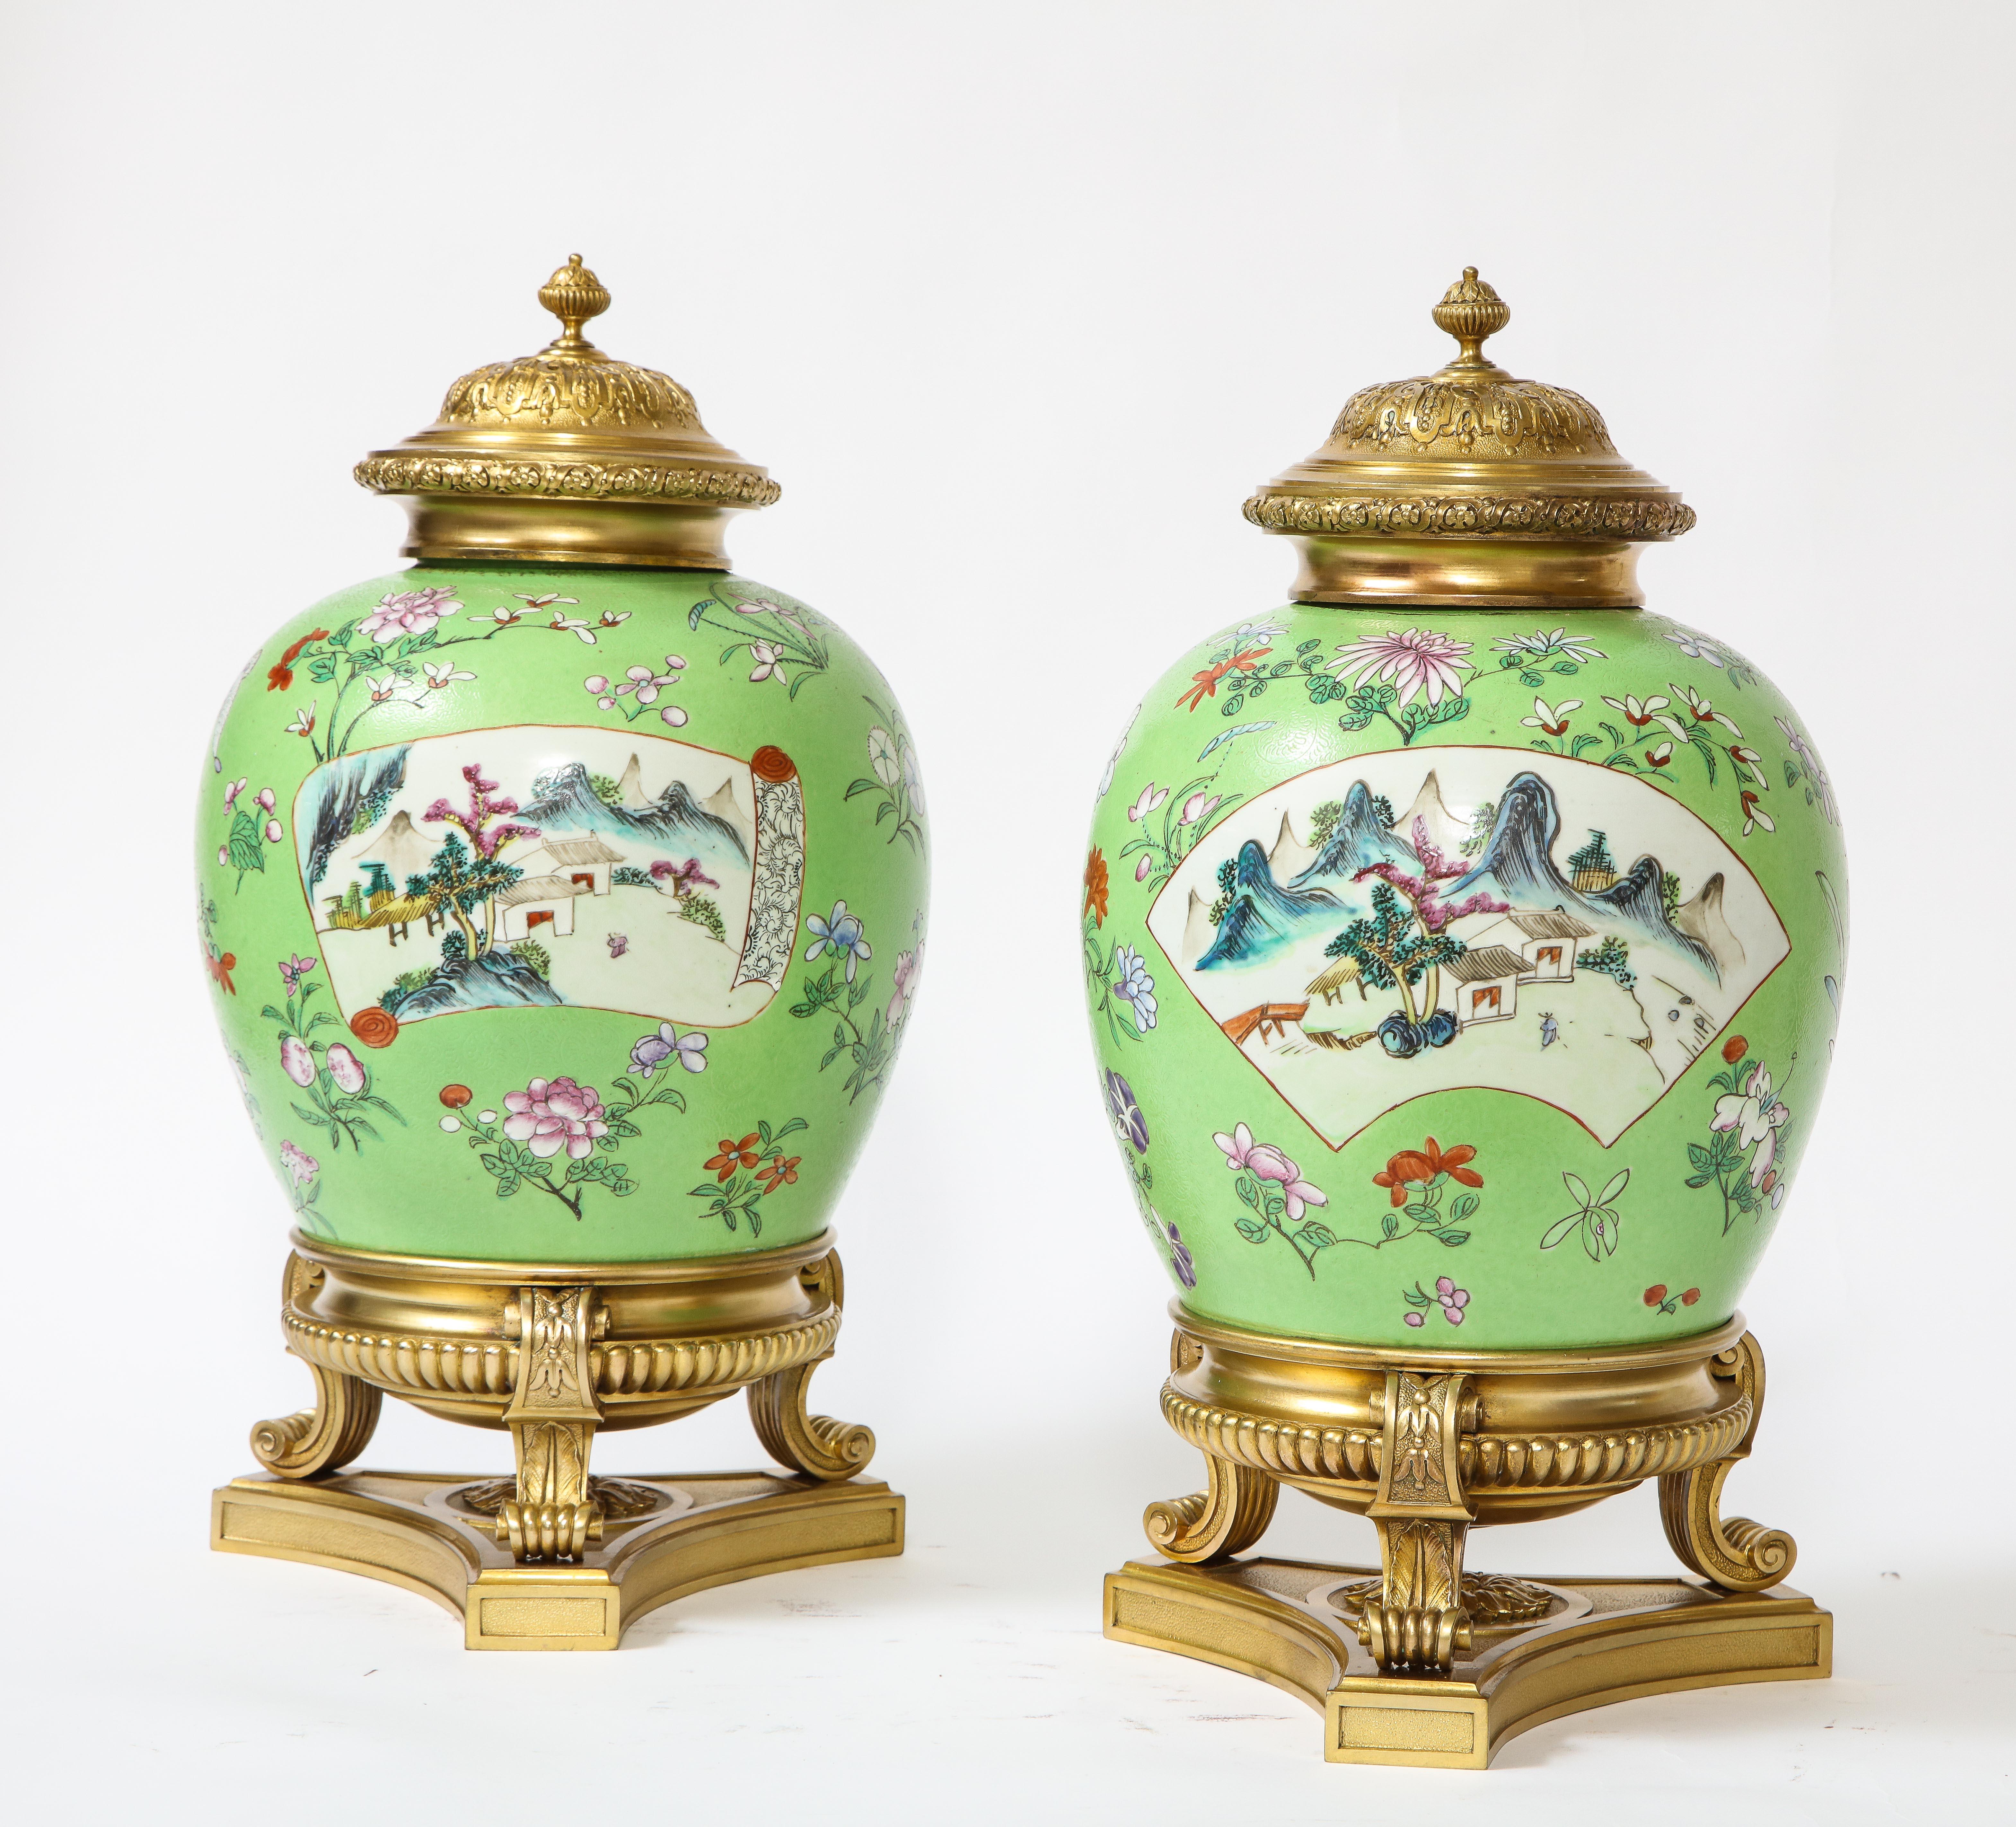 Une fabuleuse et très belle paire de vases ou por pourries en porcelaine chinoise de la Famille Rose, montés en bronze doré et recouverts de sgraffites, de style Louis XVI. Chacune d'entre elles est exceptionnellement peinte à la main avec un